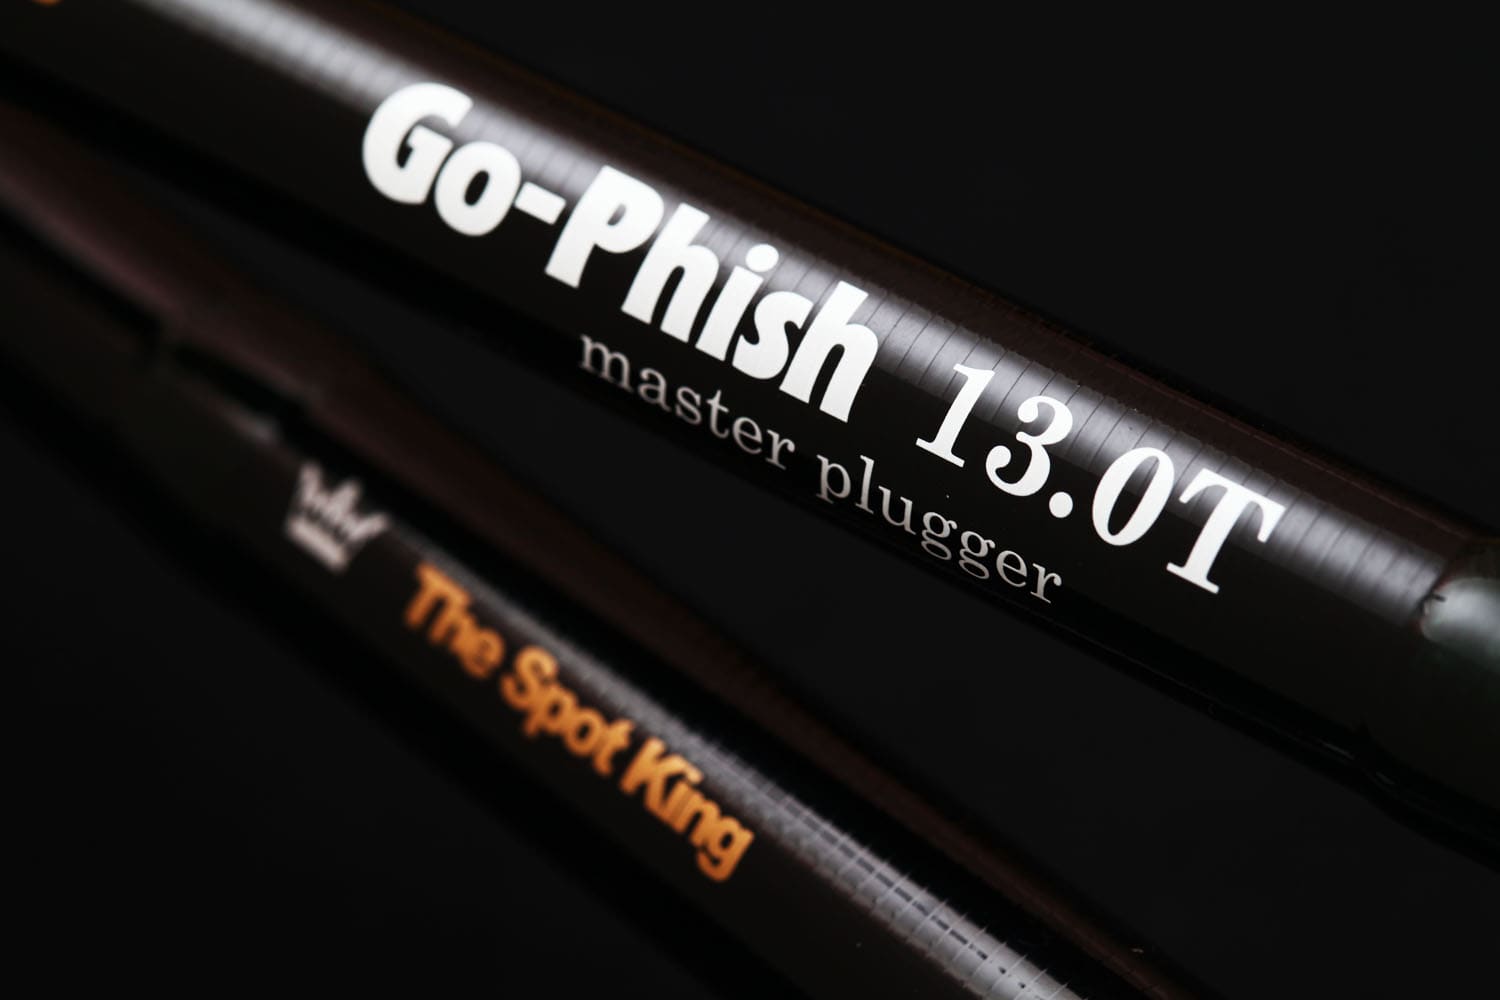 [ロッド]Go-Phish ゴーフィッシュ TheSpotKing“master plugger” 13.0T（スピニングロッド）■ネコポス対象外■